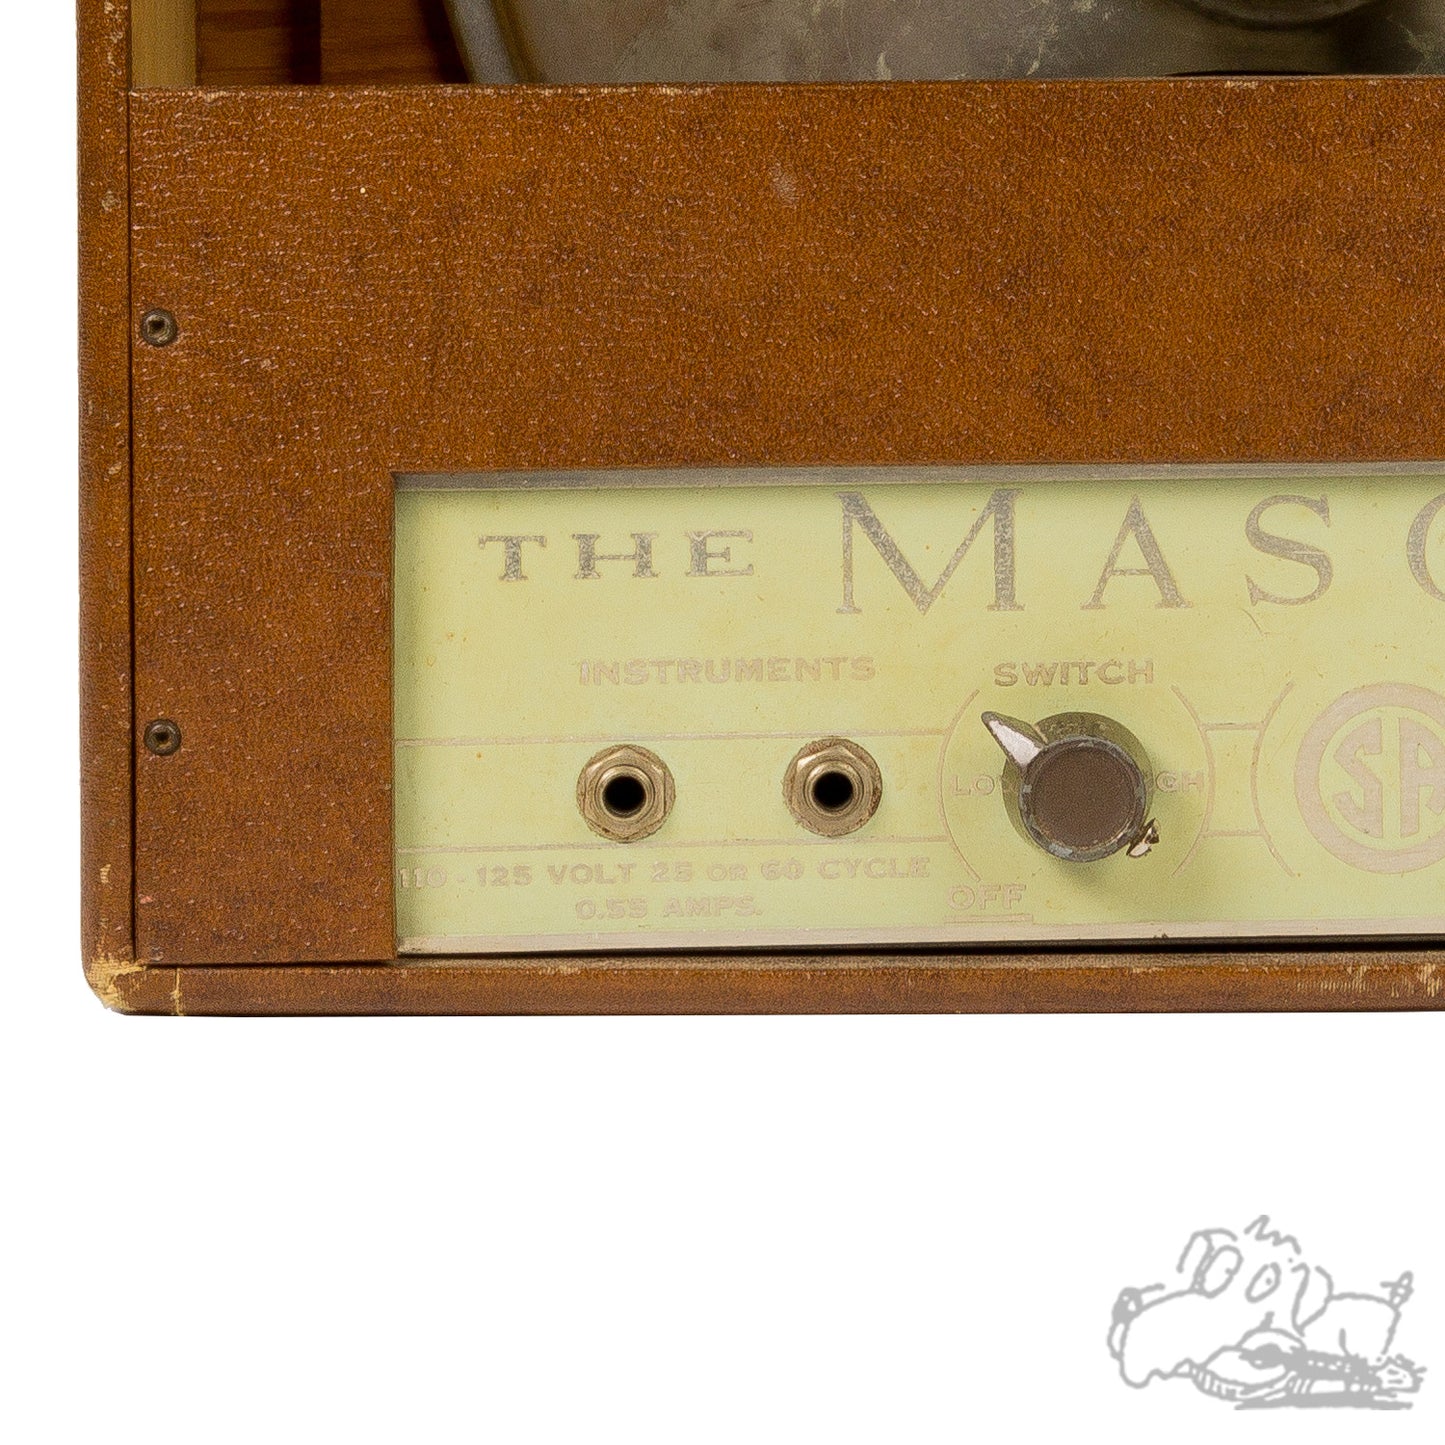 Mason Model 5 Amplifier